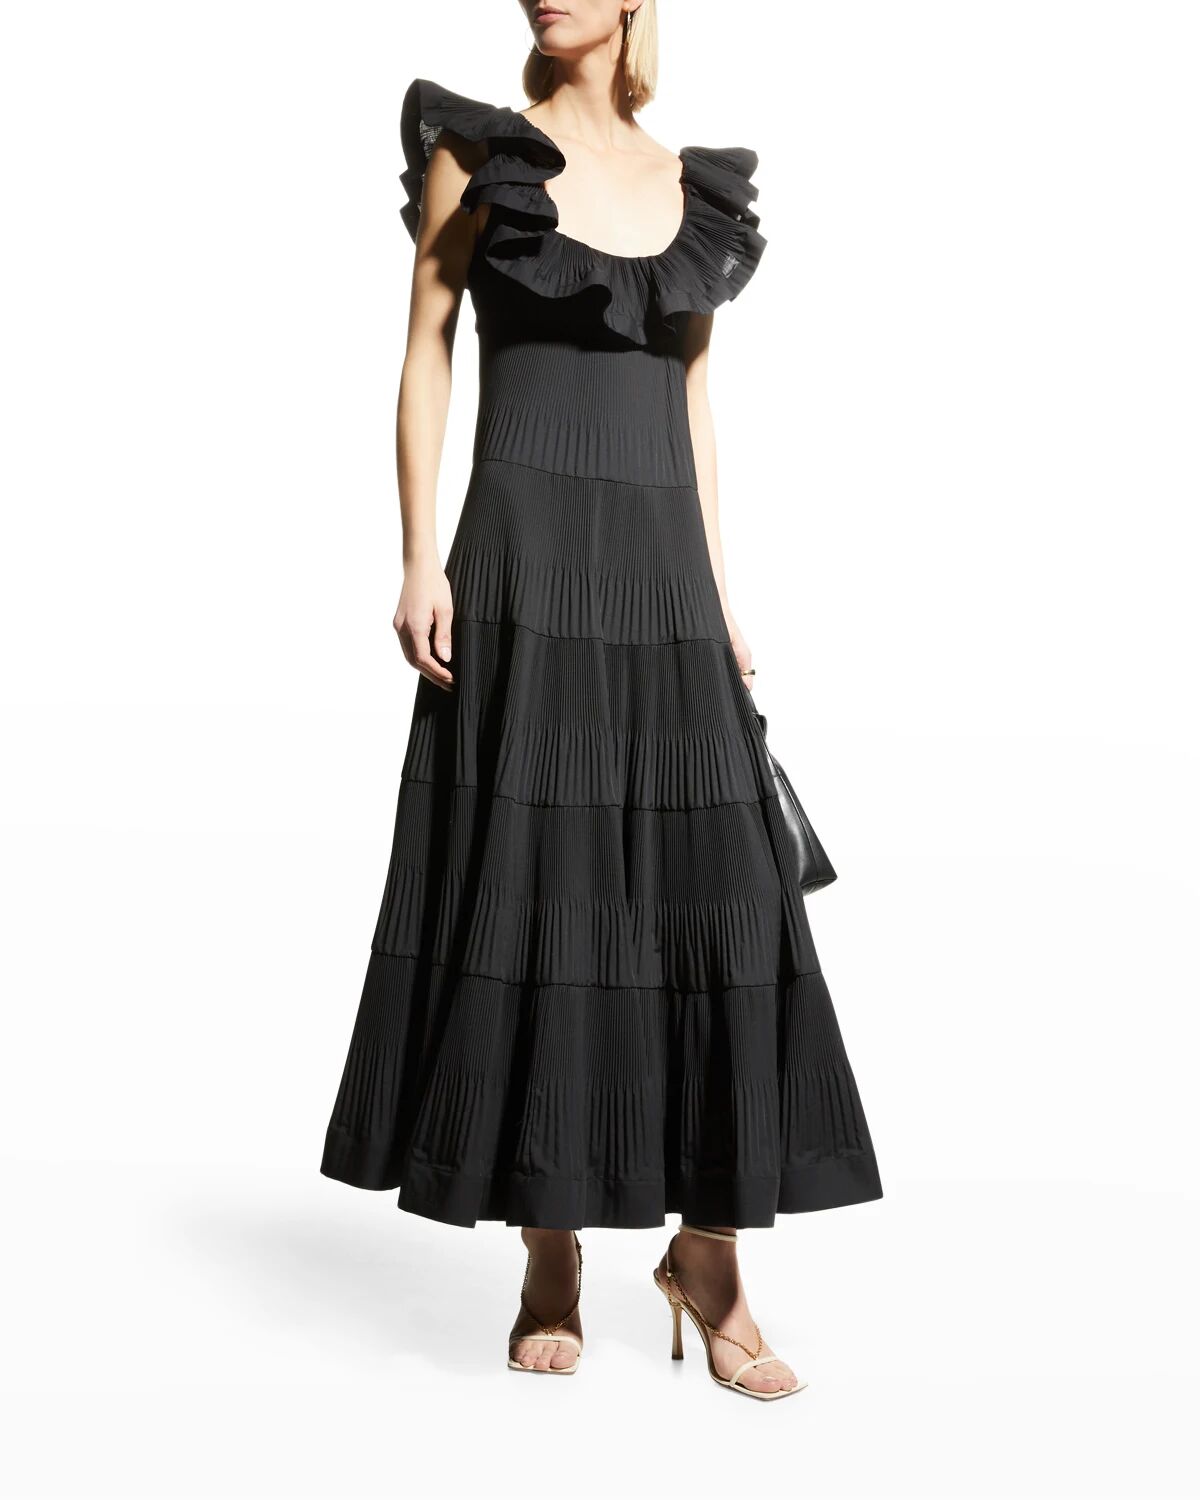 MeimeiJ Sleeveless Ruffle Pleated Dress - Size: 40 IT (4 US) - ME20C2